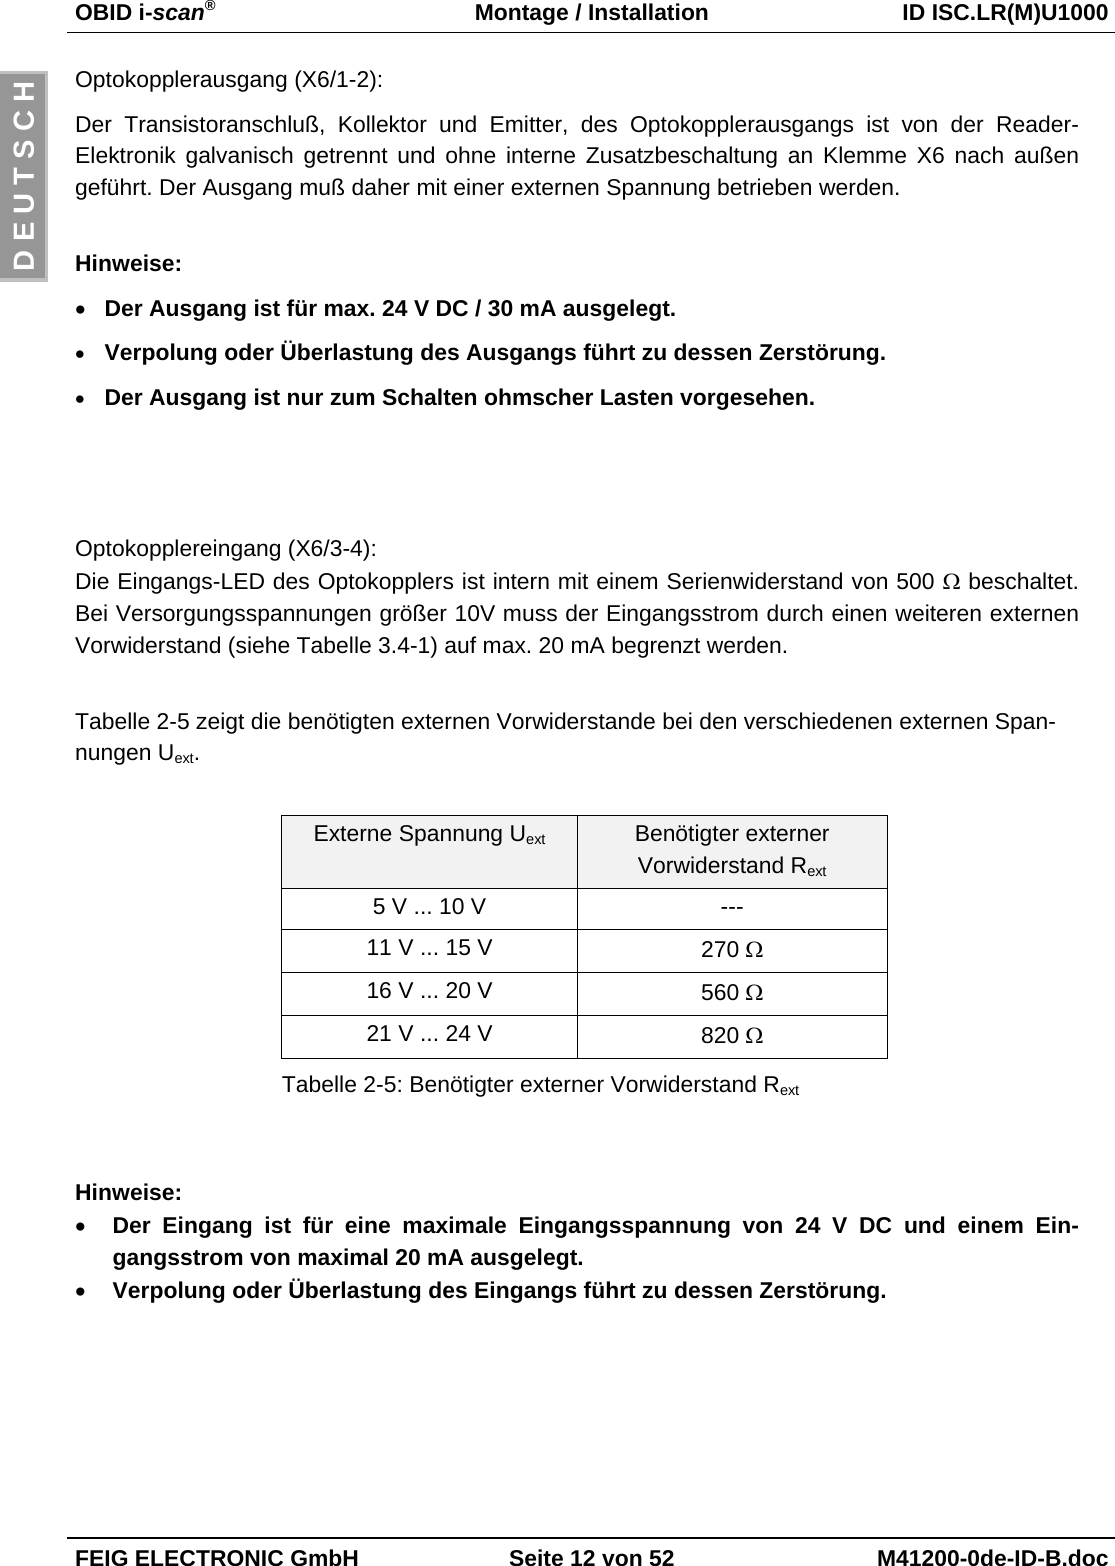 OBID i-scan®Montage / Installation ID ISC.LR(M)U1000FEIG ELECTRONIC GmbH Seite 12 von 52 M41200-0de-ID-B.docD E U T S C HOptokopplerausgang (X6/1-2):Der Transistoranschluß, Kollektor und Emitter, des Optokopplerausgangs ist von der Reader-Elektronik galvanisch getrennt und ohne interne Zusatzbeschaltung an Klemme X6 nach außengeführt. Der Ausgang muß daher mit einer externen Spannung betrieben werden.Hinweise:• Der Ausgang ist für max. 24 V DC / 30 mA ausgelegt.• Verpolung oder Überlastung des Ausgangs führt zu dessen Zerstörung.• Der Ausgang ist nur zum Schalten ohmscher Lasten vorgesehen.Optokopplereingang (X6/3-4):Die Eingangs-LED des Optokopplers ist intern mit einem Serienwiderstand von 500 Ω beschaltet.Bei Versorgungsspannungen größer 10V muss der Eingangsstrom durch einen weiteren externenVorwiderstand (siehe Tabelle 3.4-1) auf max. 20 mA begrenzt werden.Tabelle 2-5 zeigt die benötigten externen Vorwiderstande bei den verschiedenen externen Span-nungen Uext.Externe Spannung Uext Benötigter externerVorwiderstand Rext5 V ... 10 V ---11 V ... 15 V 270 Ω16 V ... 20 V 560 Ω21 V ... 24 V 820 ΩTabelle 2-5: Benötigter externer Vorwiderstand RextHinweise:• Der Eingang ist für eine maximale Eingangsspannung von 24 V DC und einem Ein-gangsstrom von maximal 20 mA ausgelegt.• Verpolung oder Überlastung des Eingangs führt zu dessen Zerstörung.